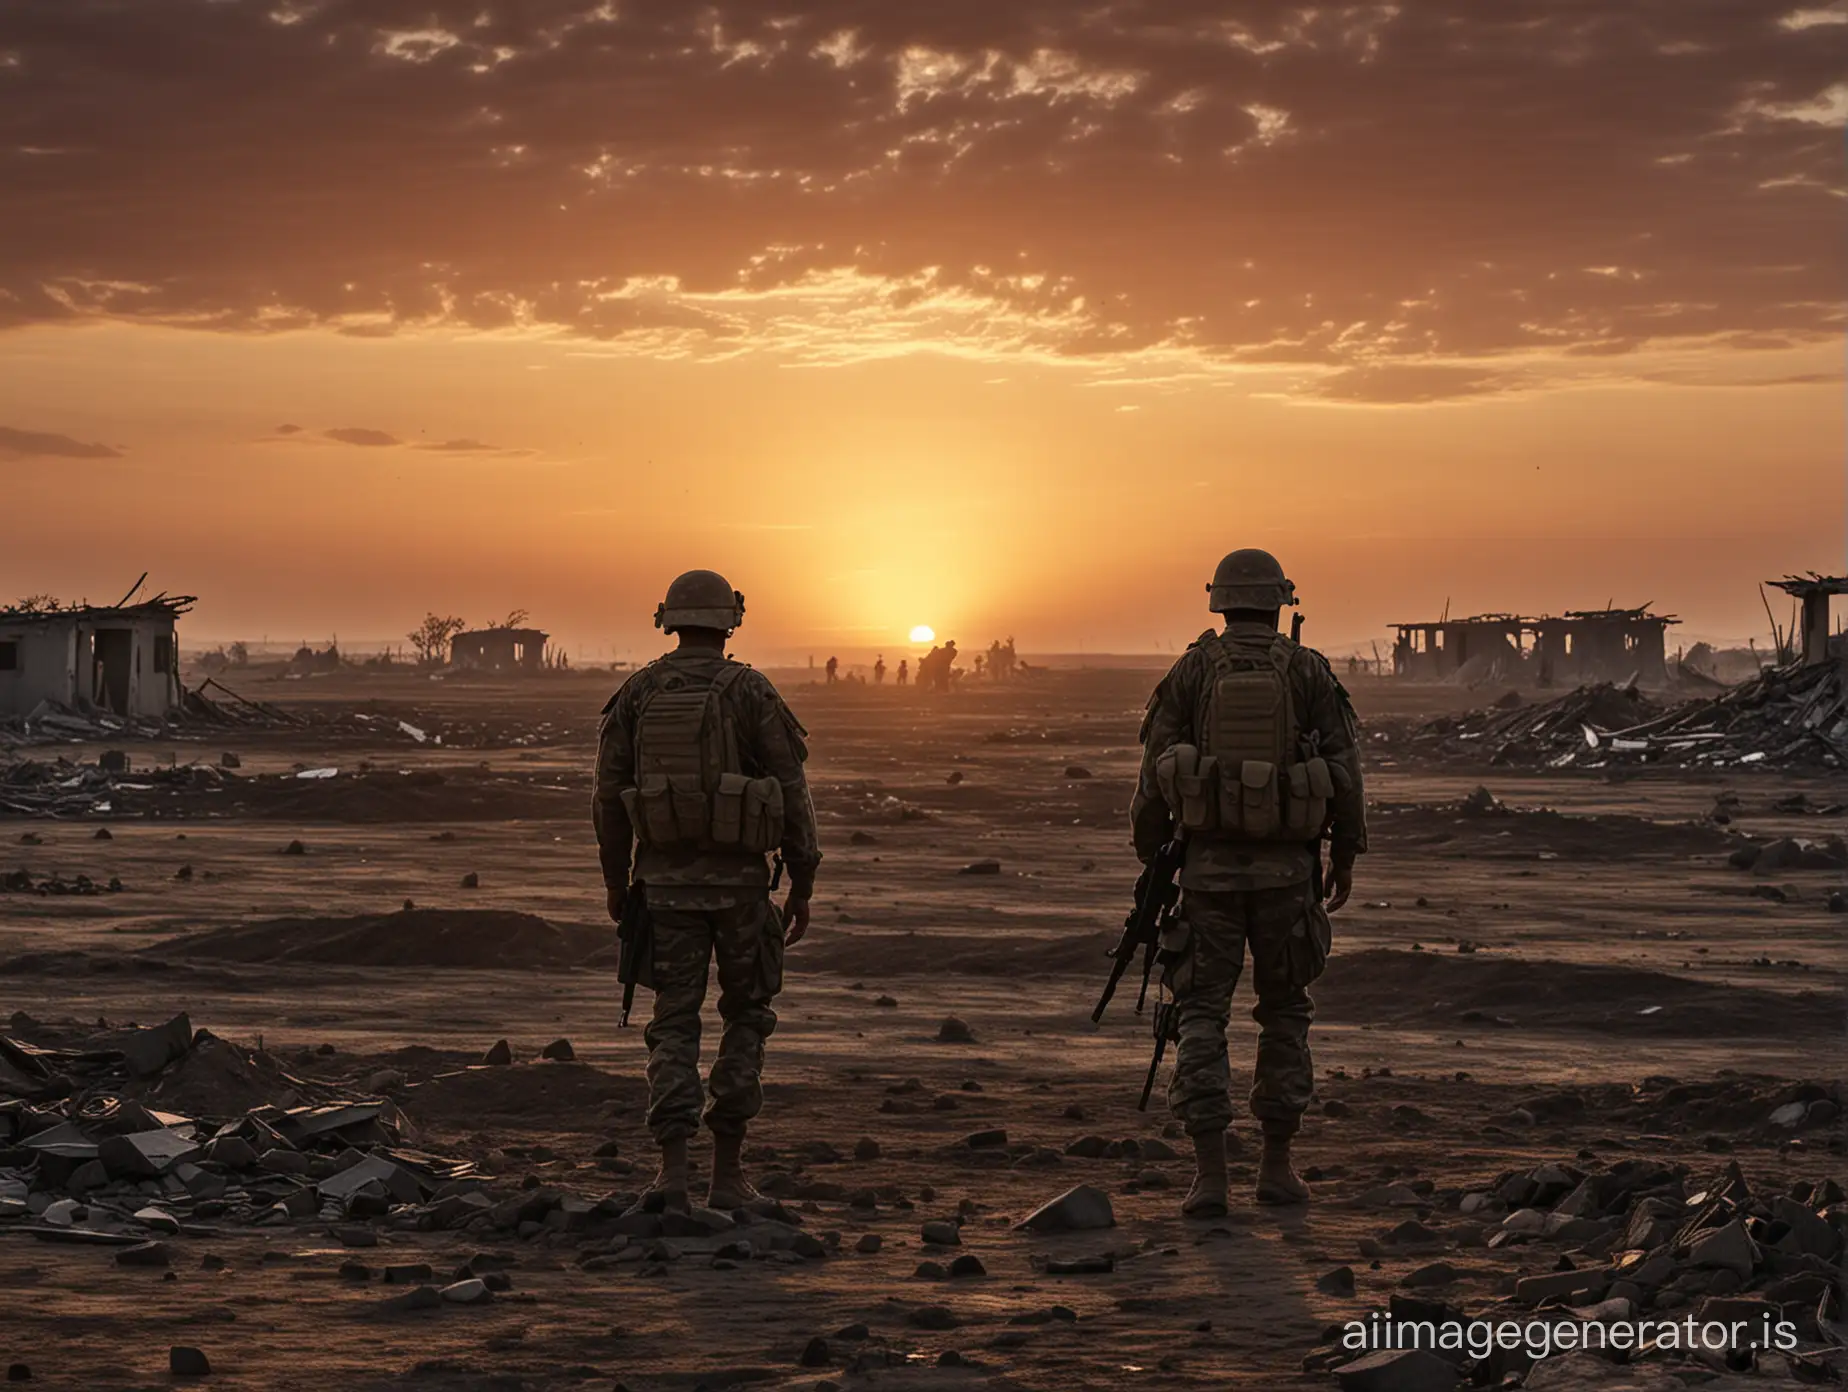 военные стоят на фоне заката спиной к наблюдателю, вдали бескрайнее поле и разрушенные дома, картинка затемнена